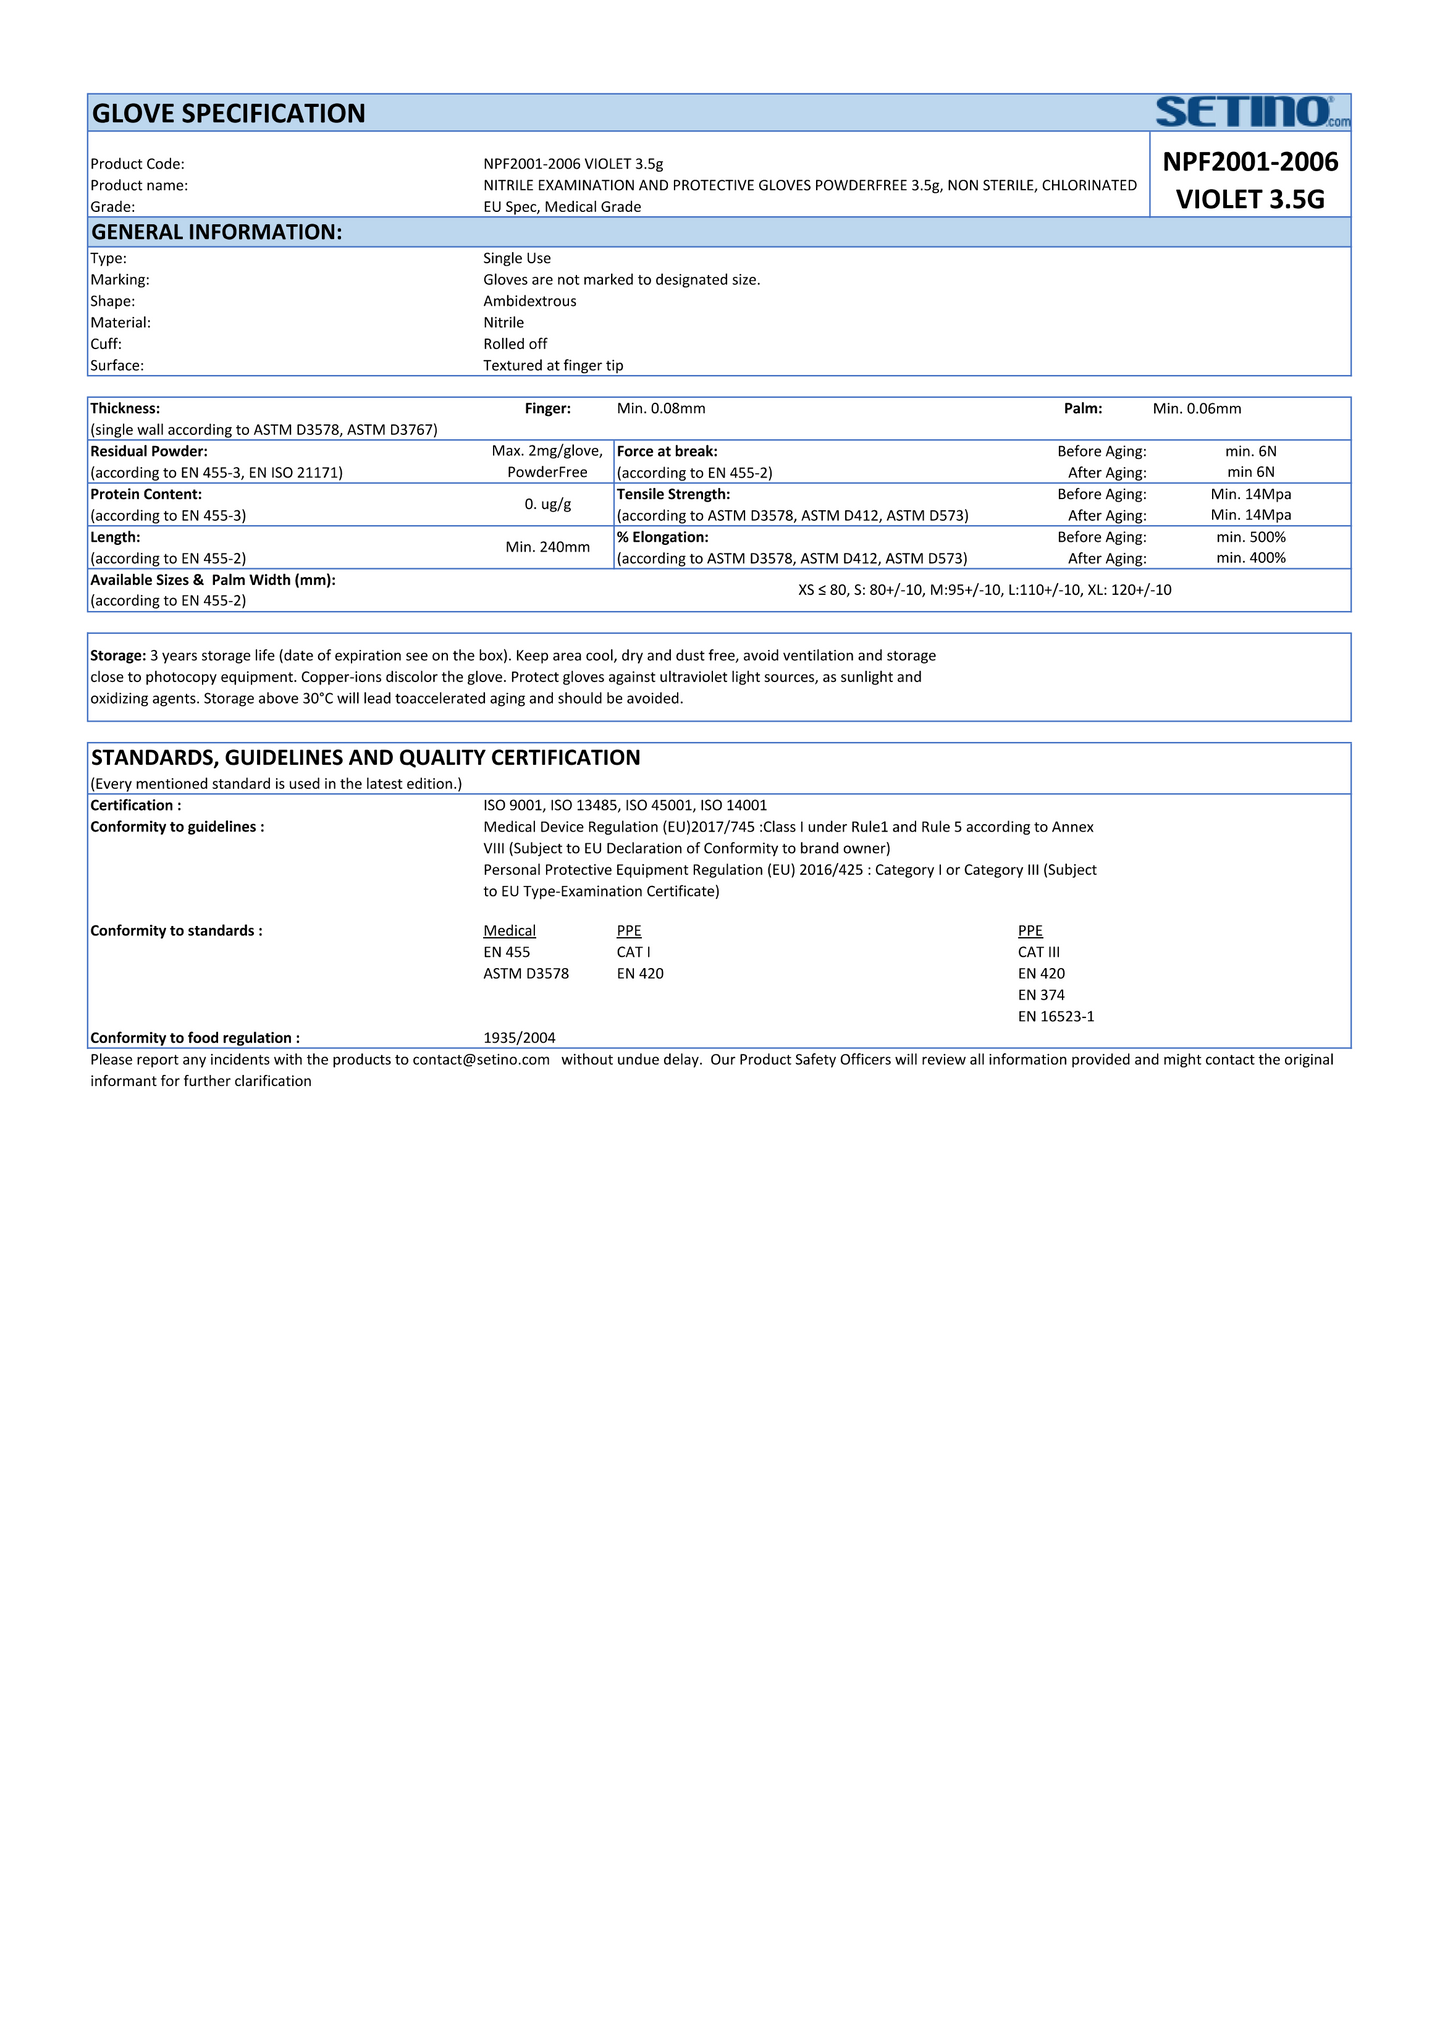 NPF2001-2006 Guante de examen y protección de nitrilo sin polvo violeta 3,5 gramos